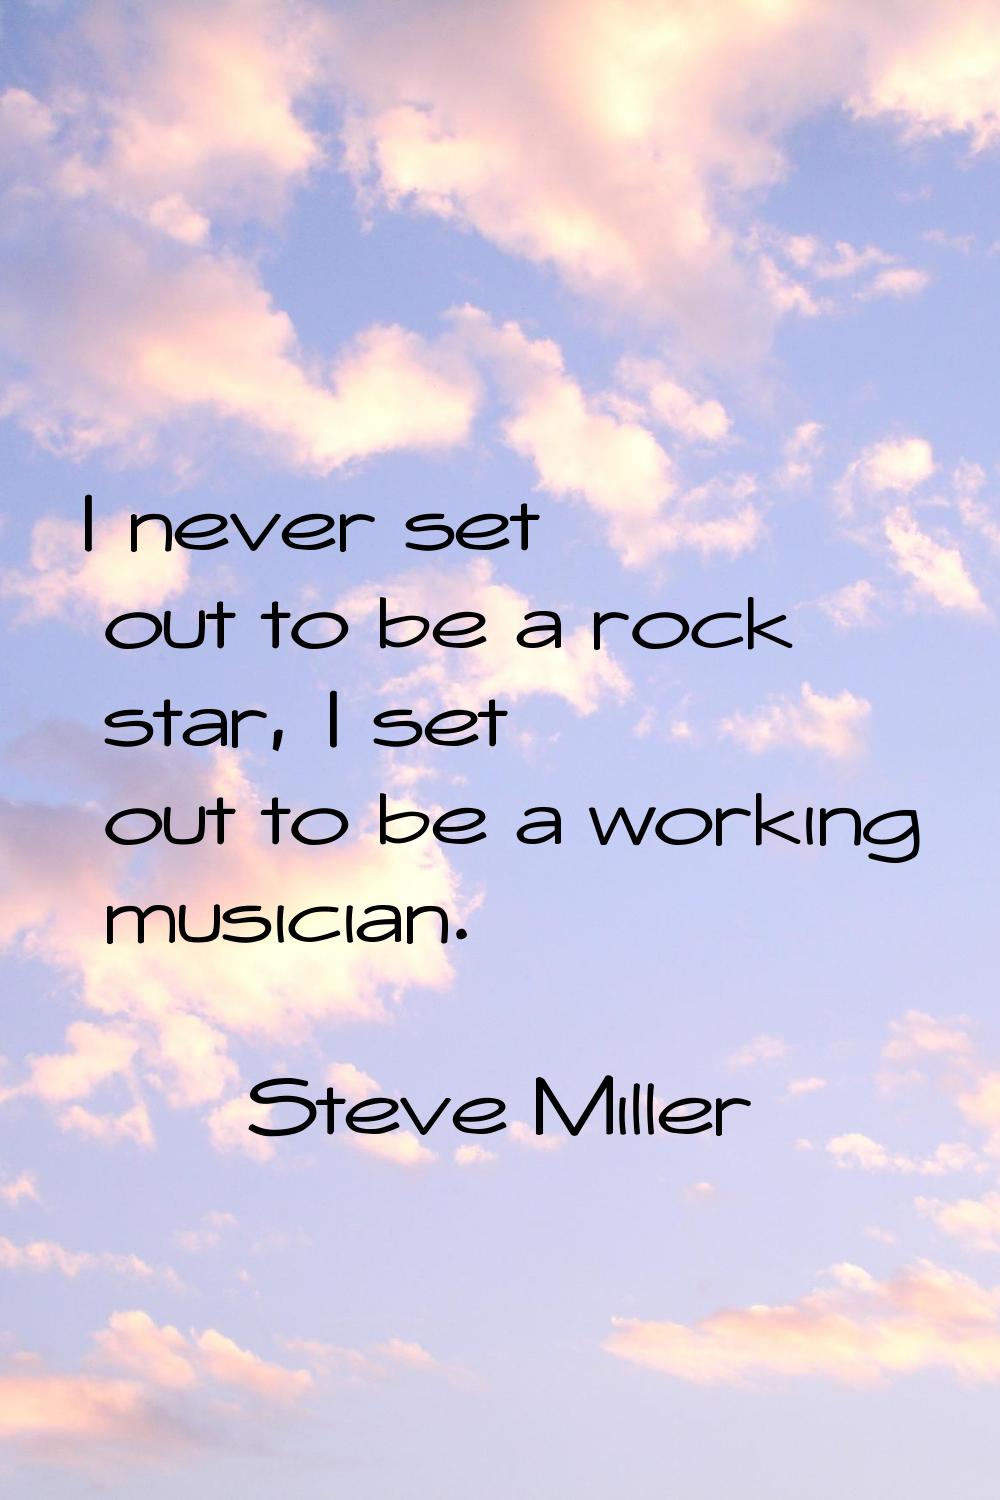 I never set out to be a rock star, I set out to be a working musician.